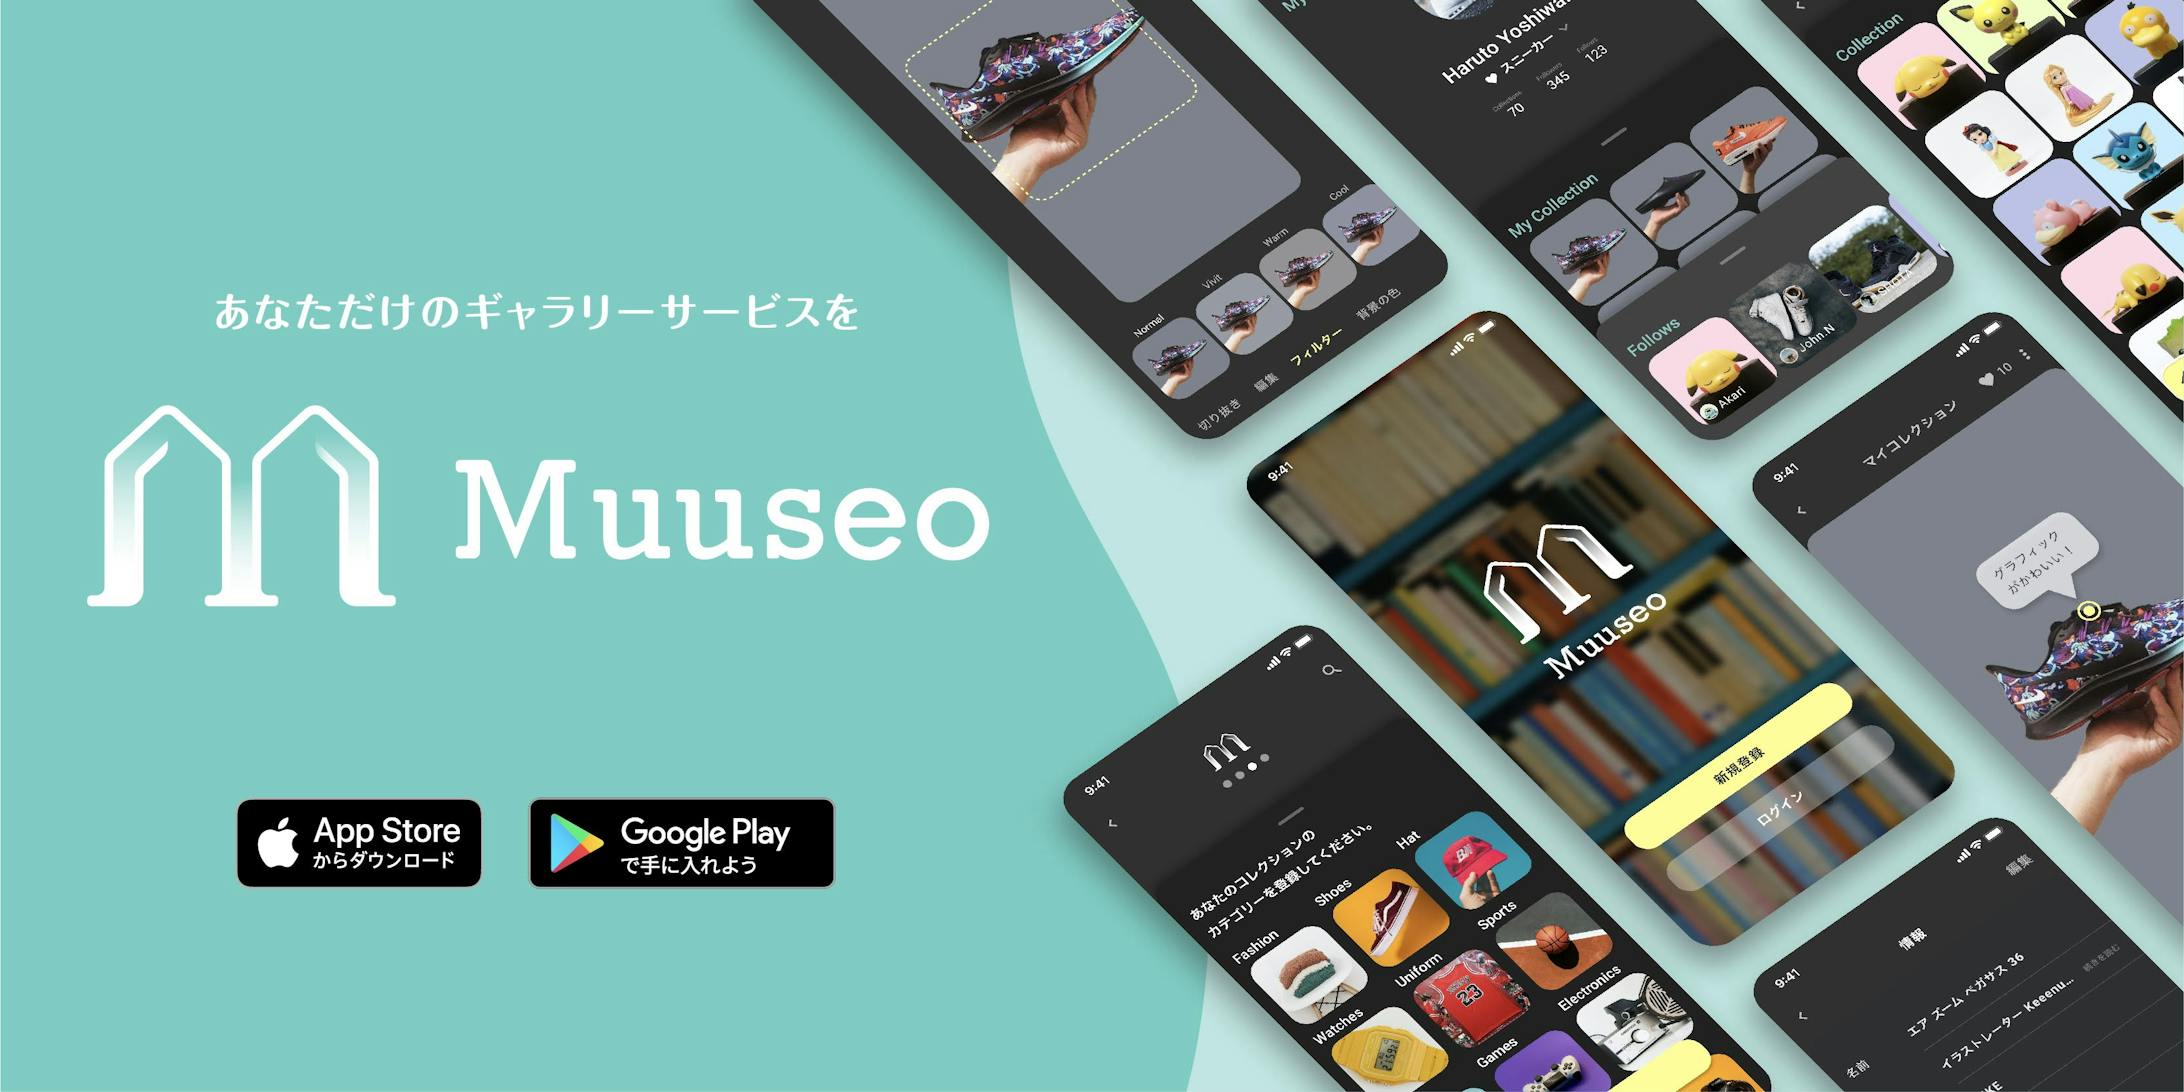 写真投稿アプリ 「Muuseo」-1